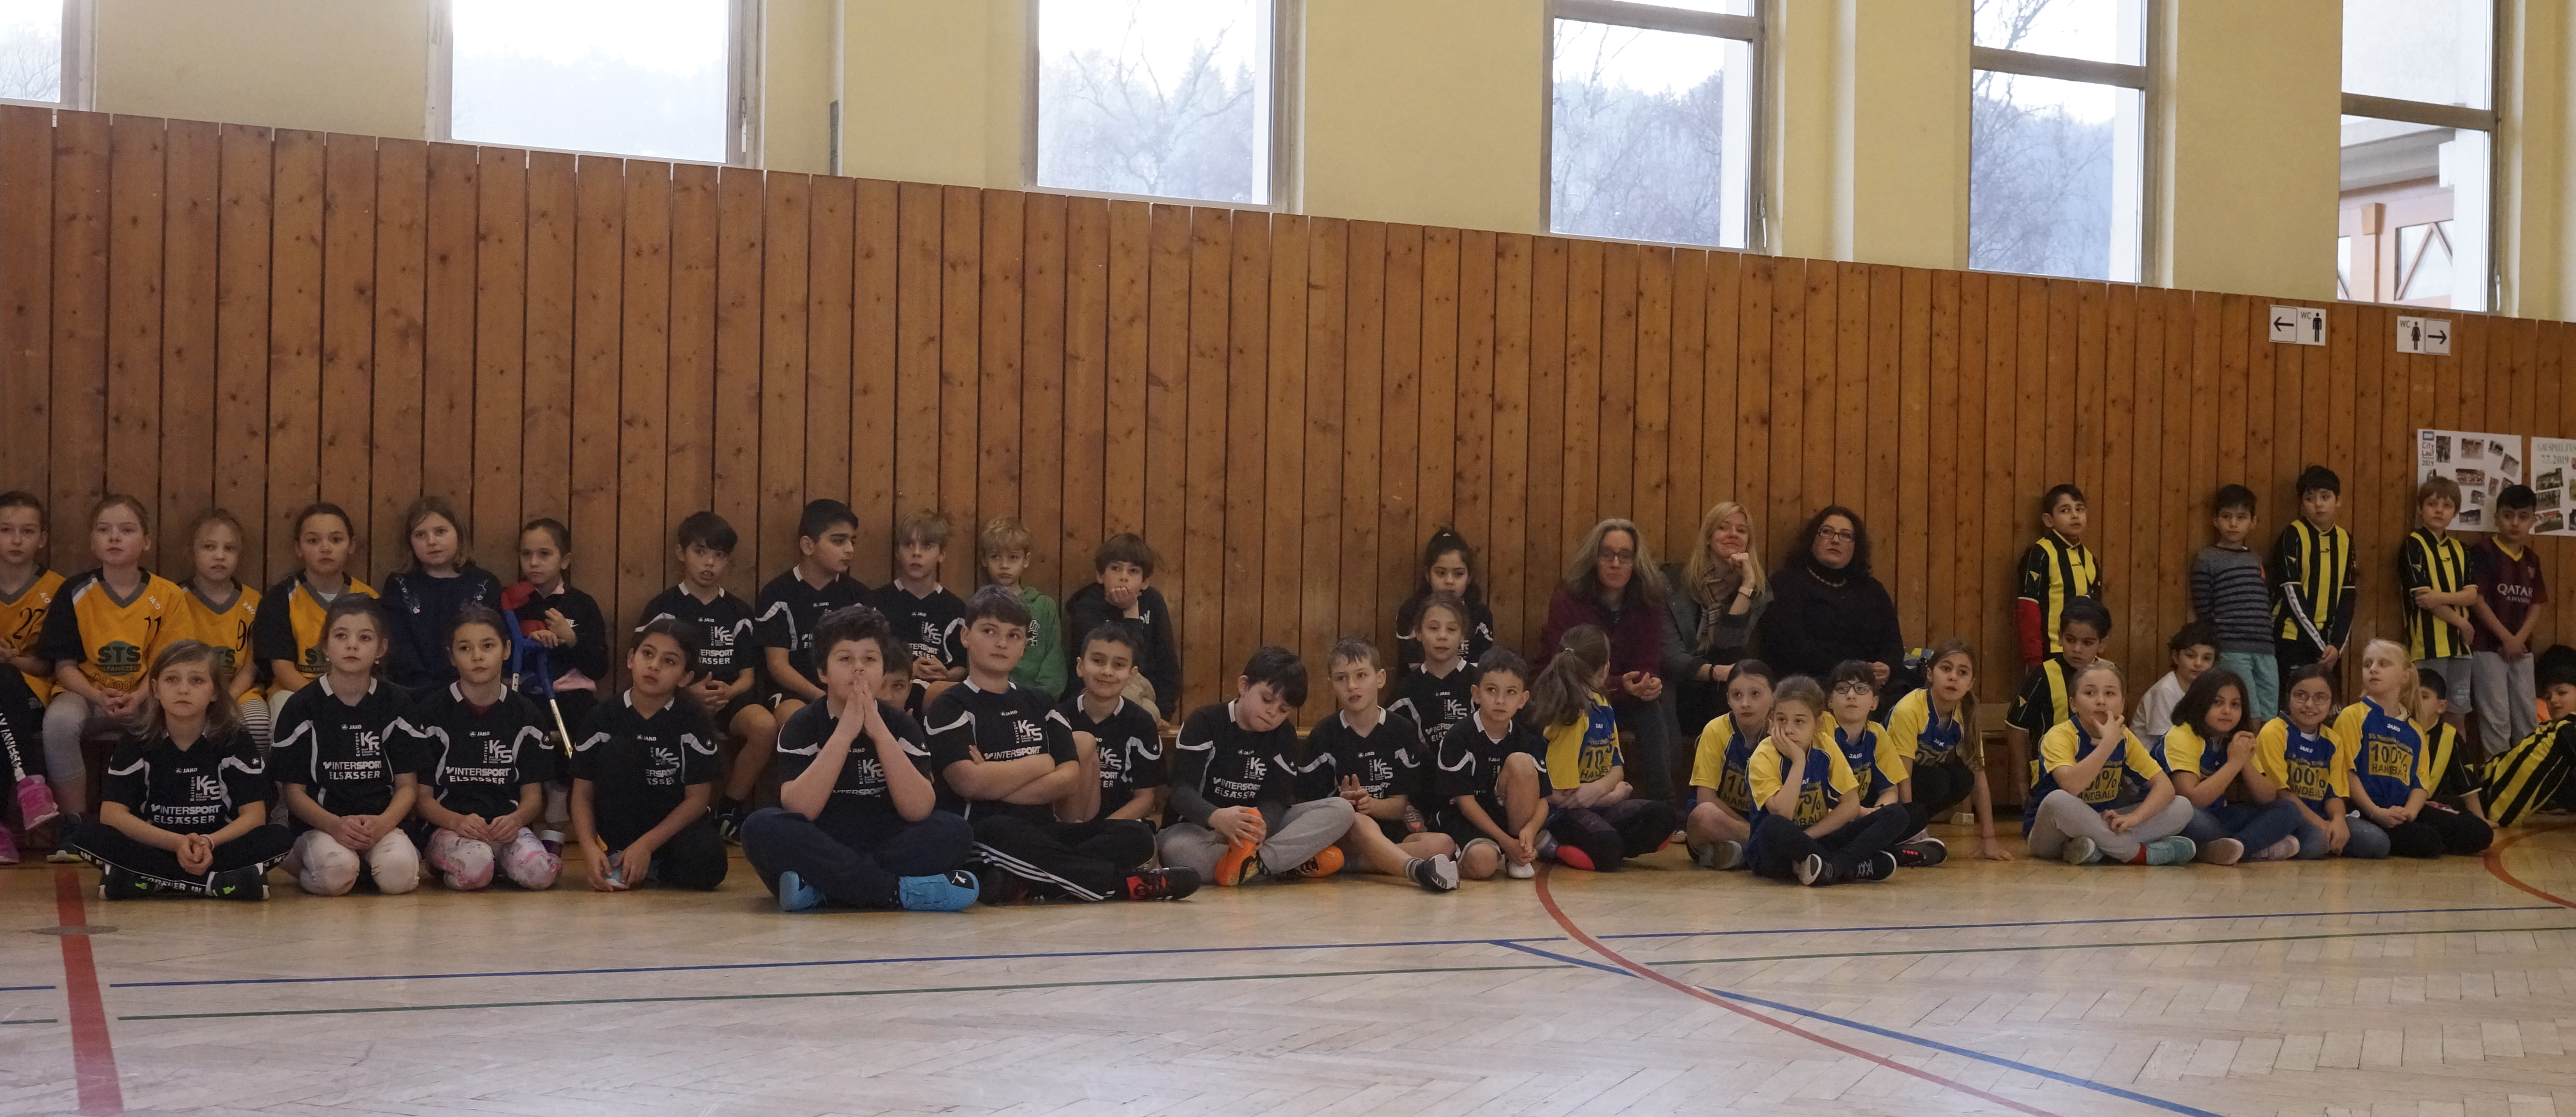 Handballturnier der 3. und 4. Klassen an der KFS